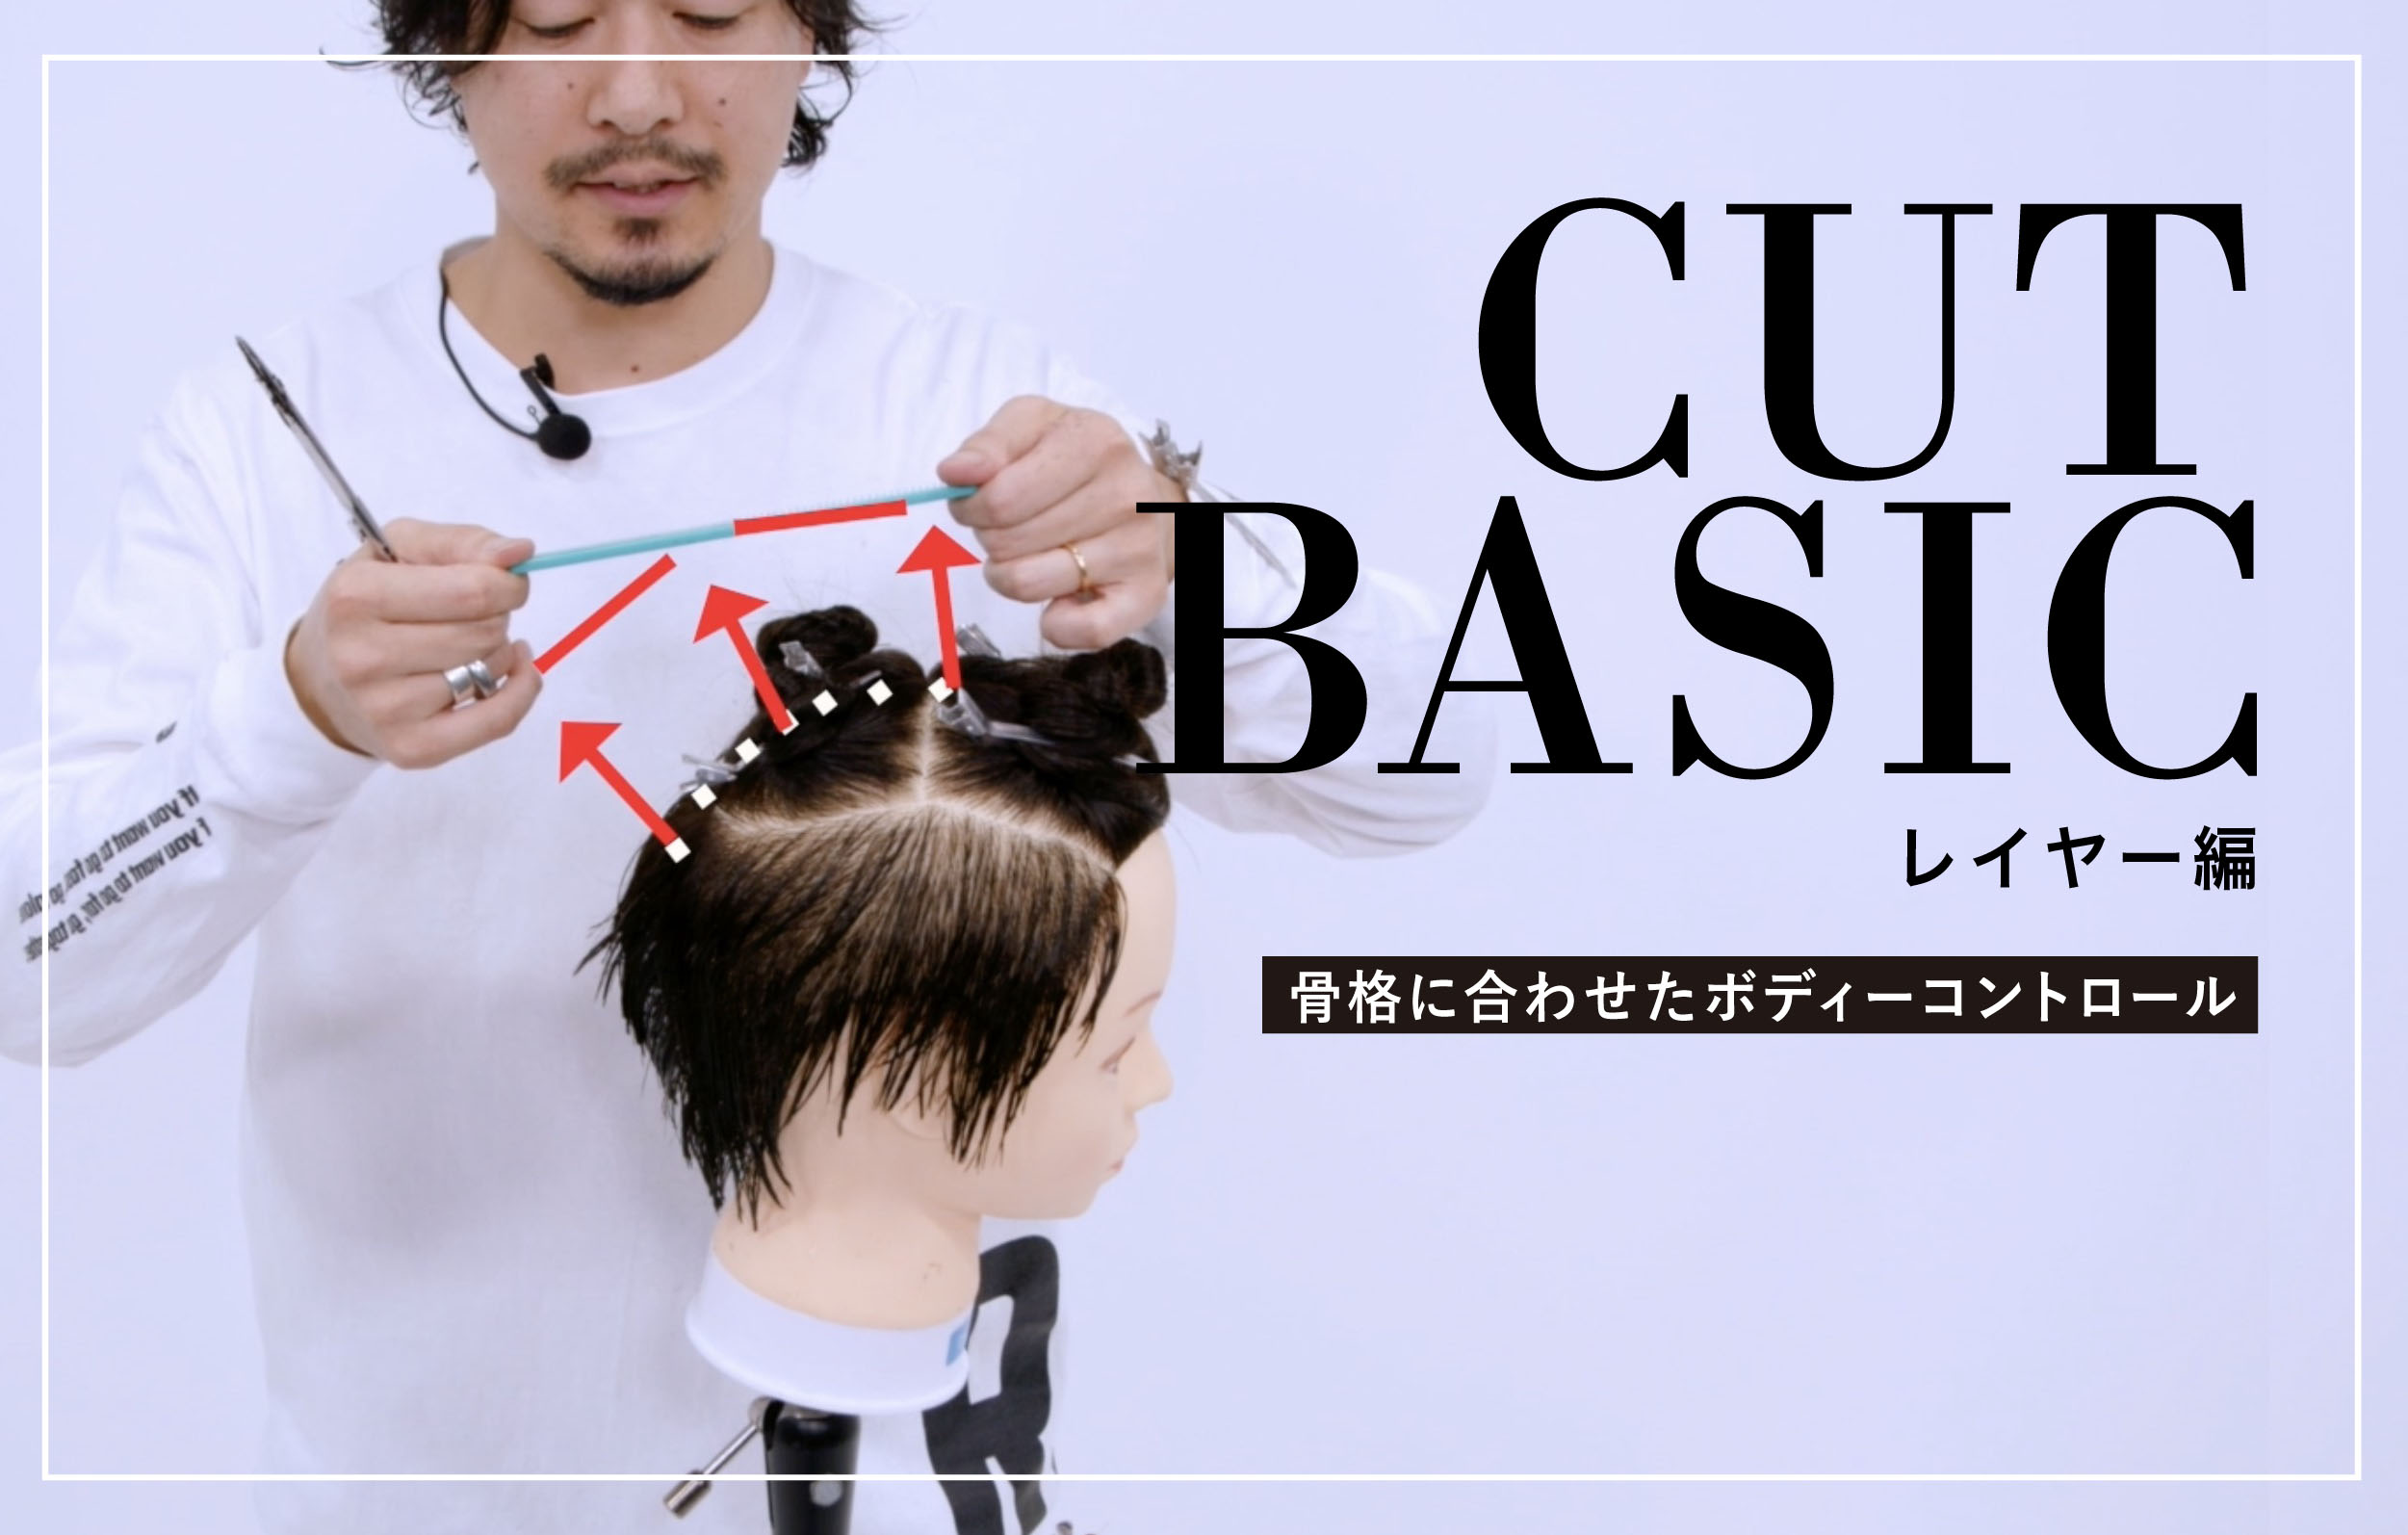 【CUT BASIC】 レイヤー編